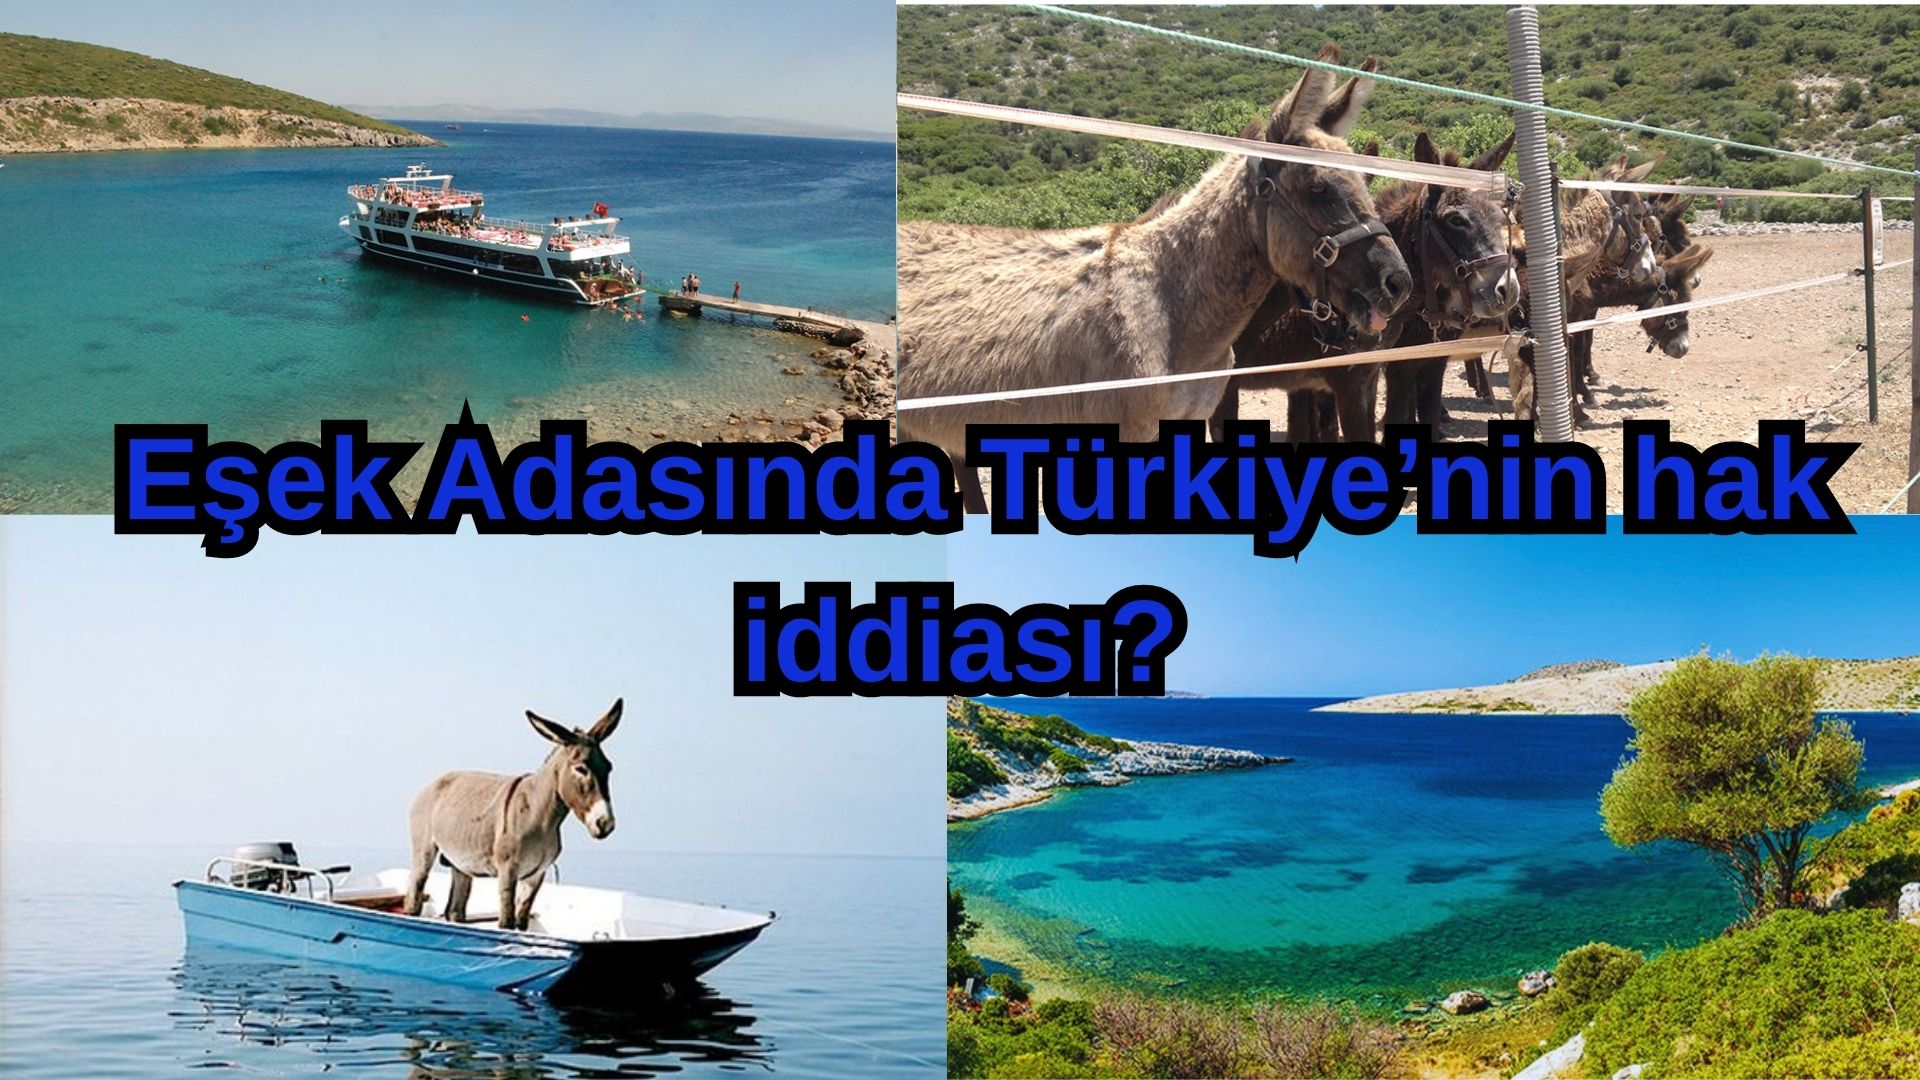 _Eşek Adasında Türkiye’nin hak iddiası